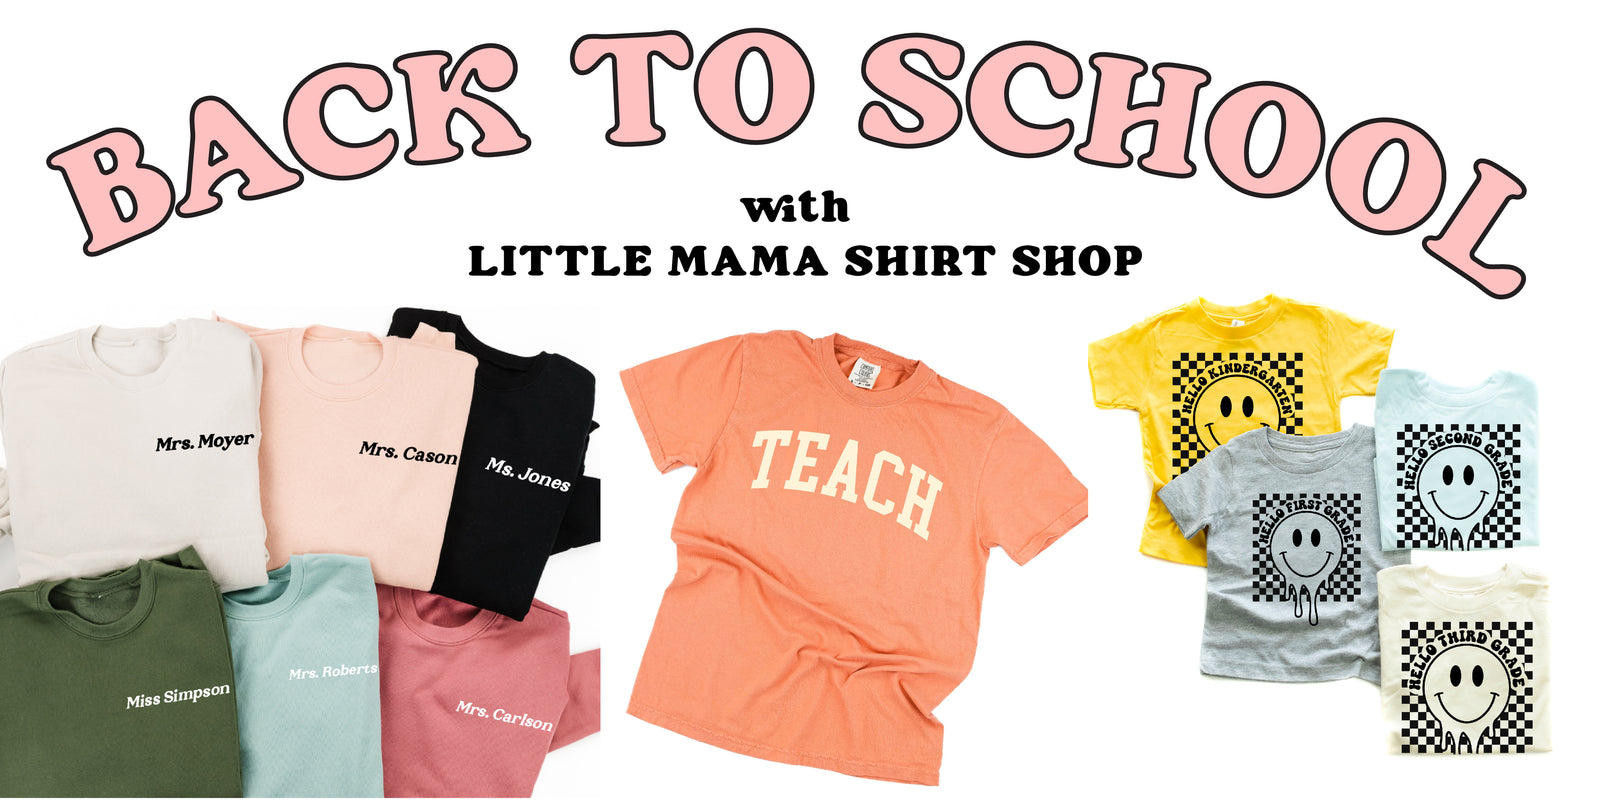 Livlig lide markør Little Mama Shirt Shop – Little Mama Shirt Shop LLC